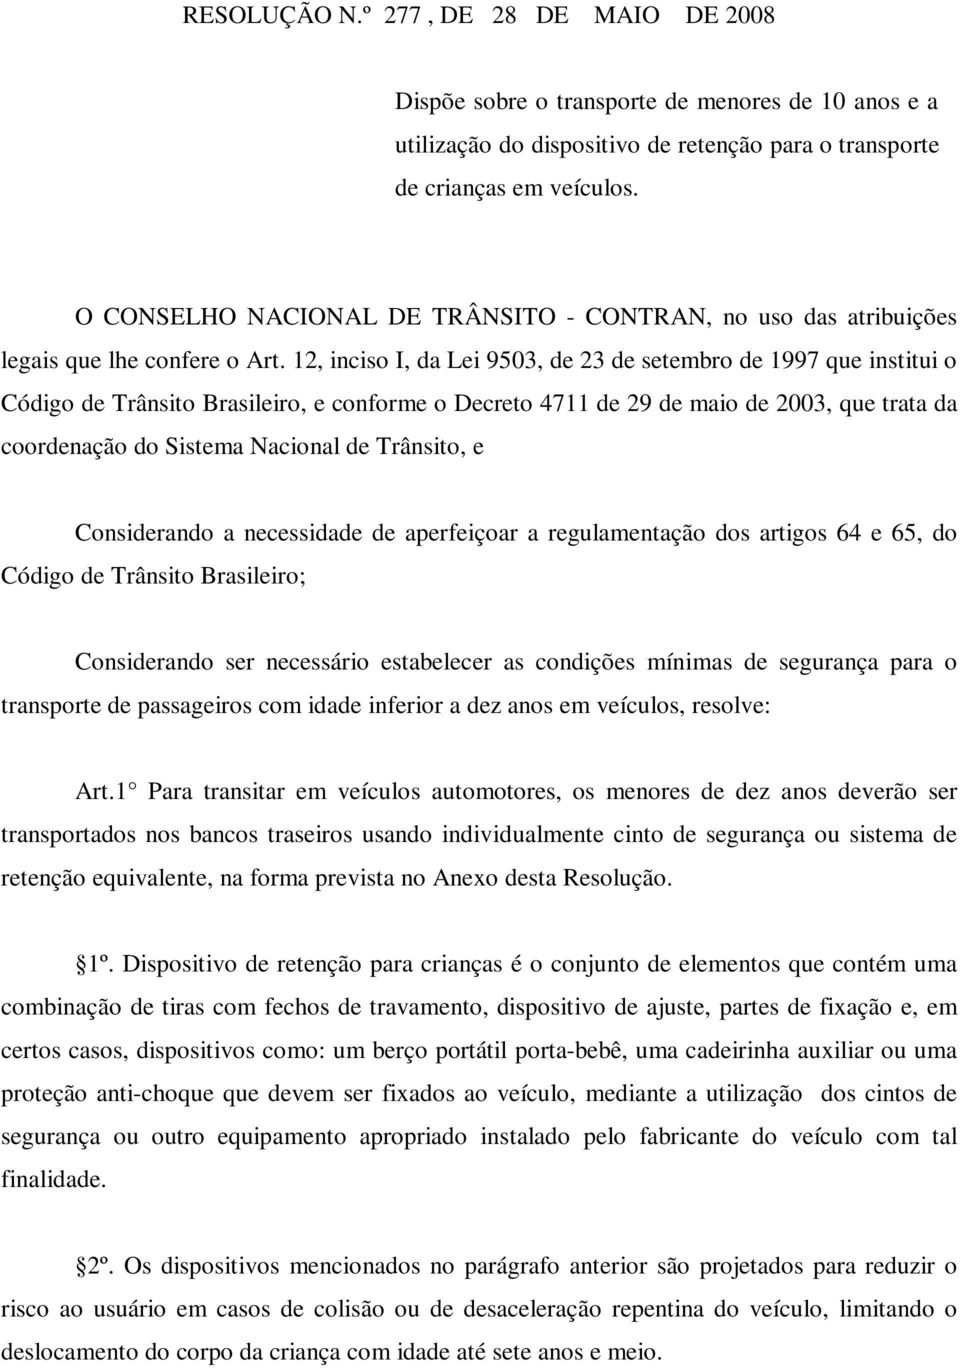 12, inciso I, da Lei 9503, de 23 de setembro de 1997 que institui o Código de Trânsito Brasileiro, e conforme o Decreto 4711 de 29 de maio de 2003, que trata da coordenação do Sistema Nacional de